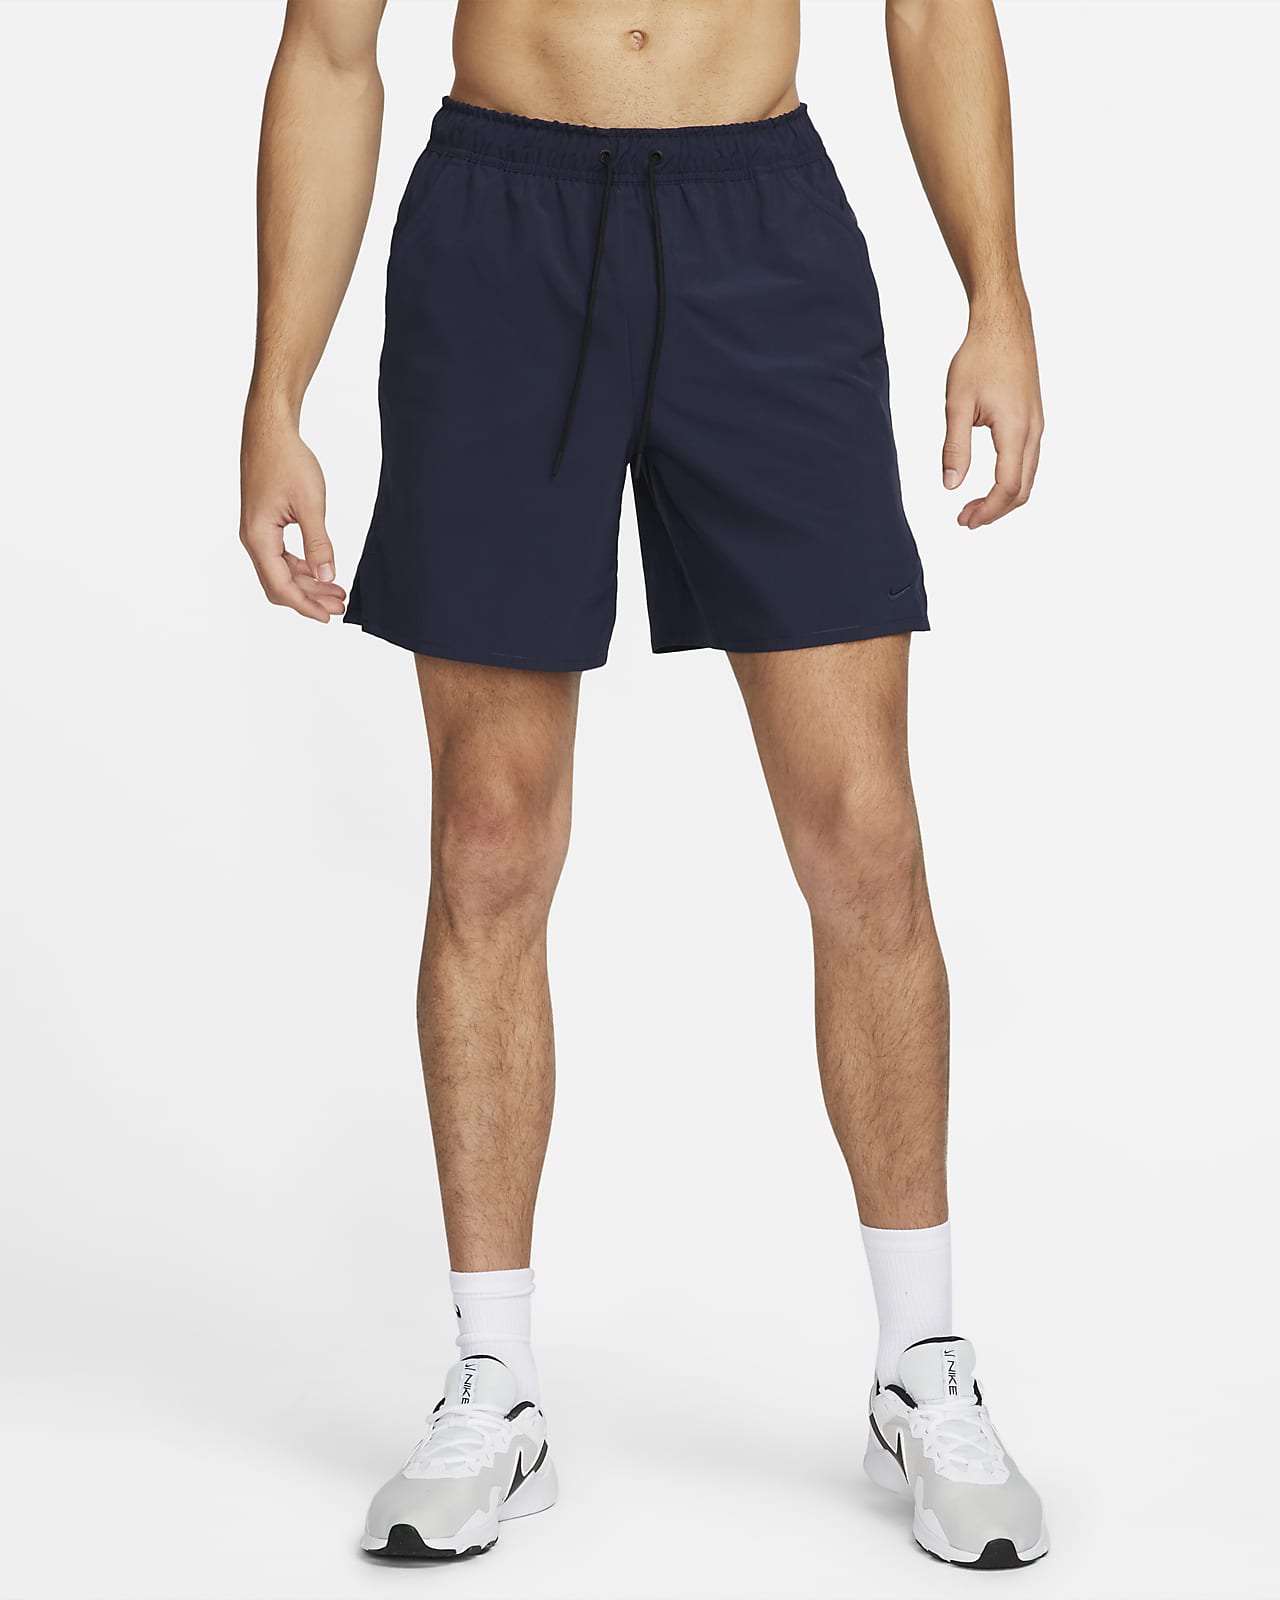 Nike Unlimited Men's Dri-FIT 7 Unlined Versatile Shorts